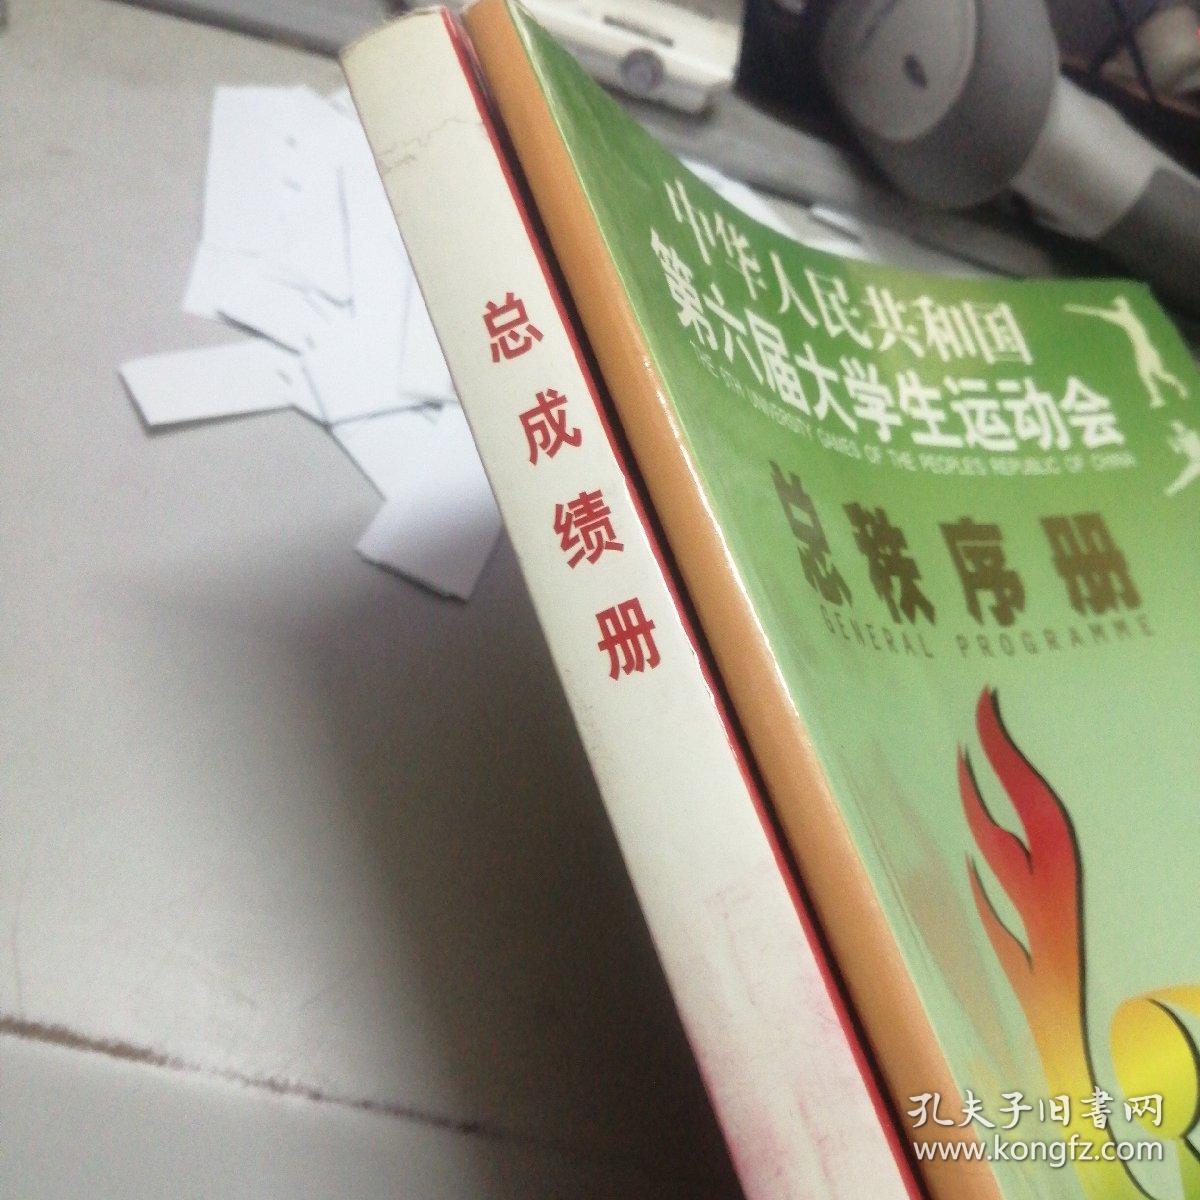 秩序册----中华人民共和国第六届大学生运动会 总秩序册 +总成绩册